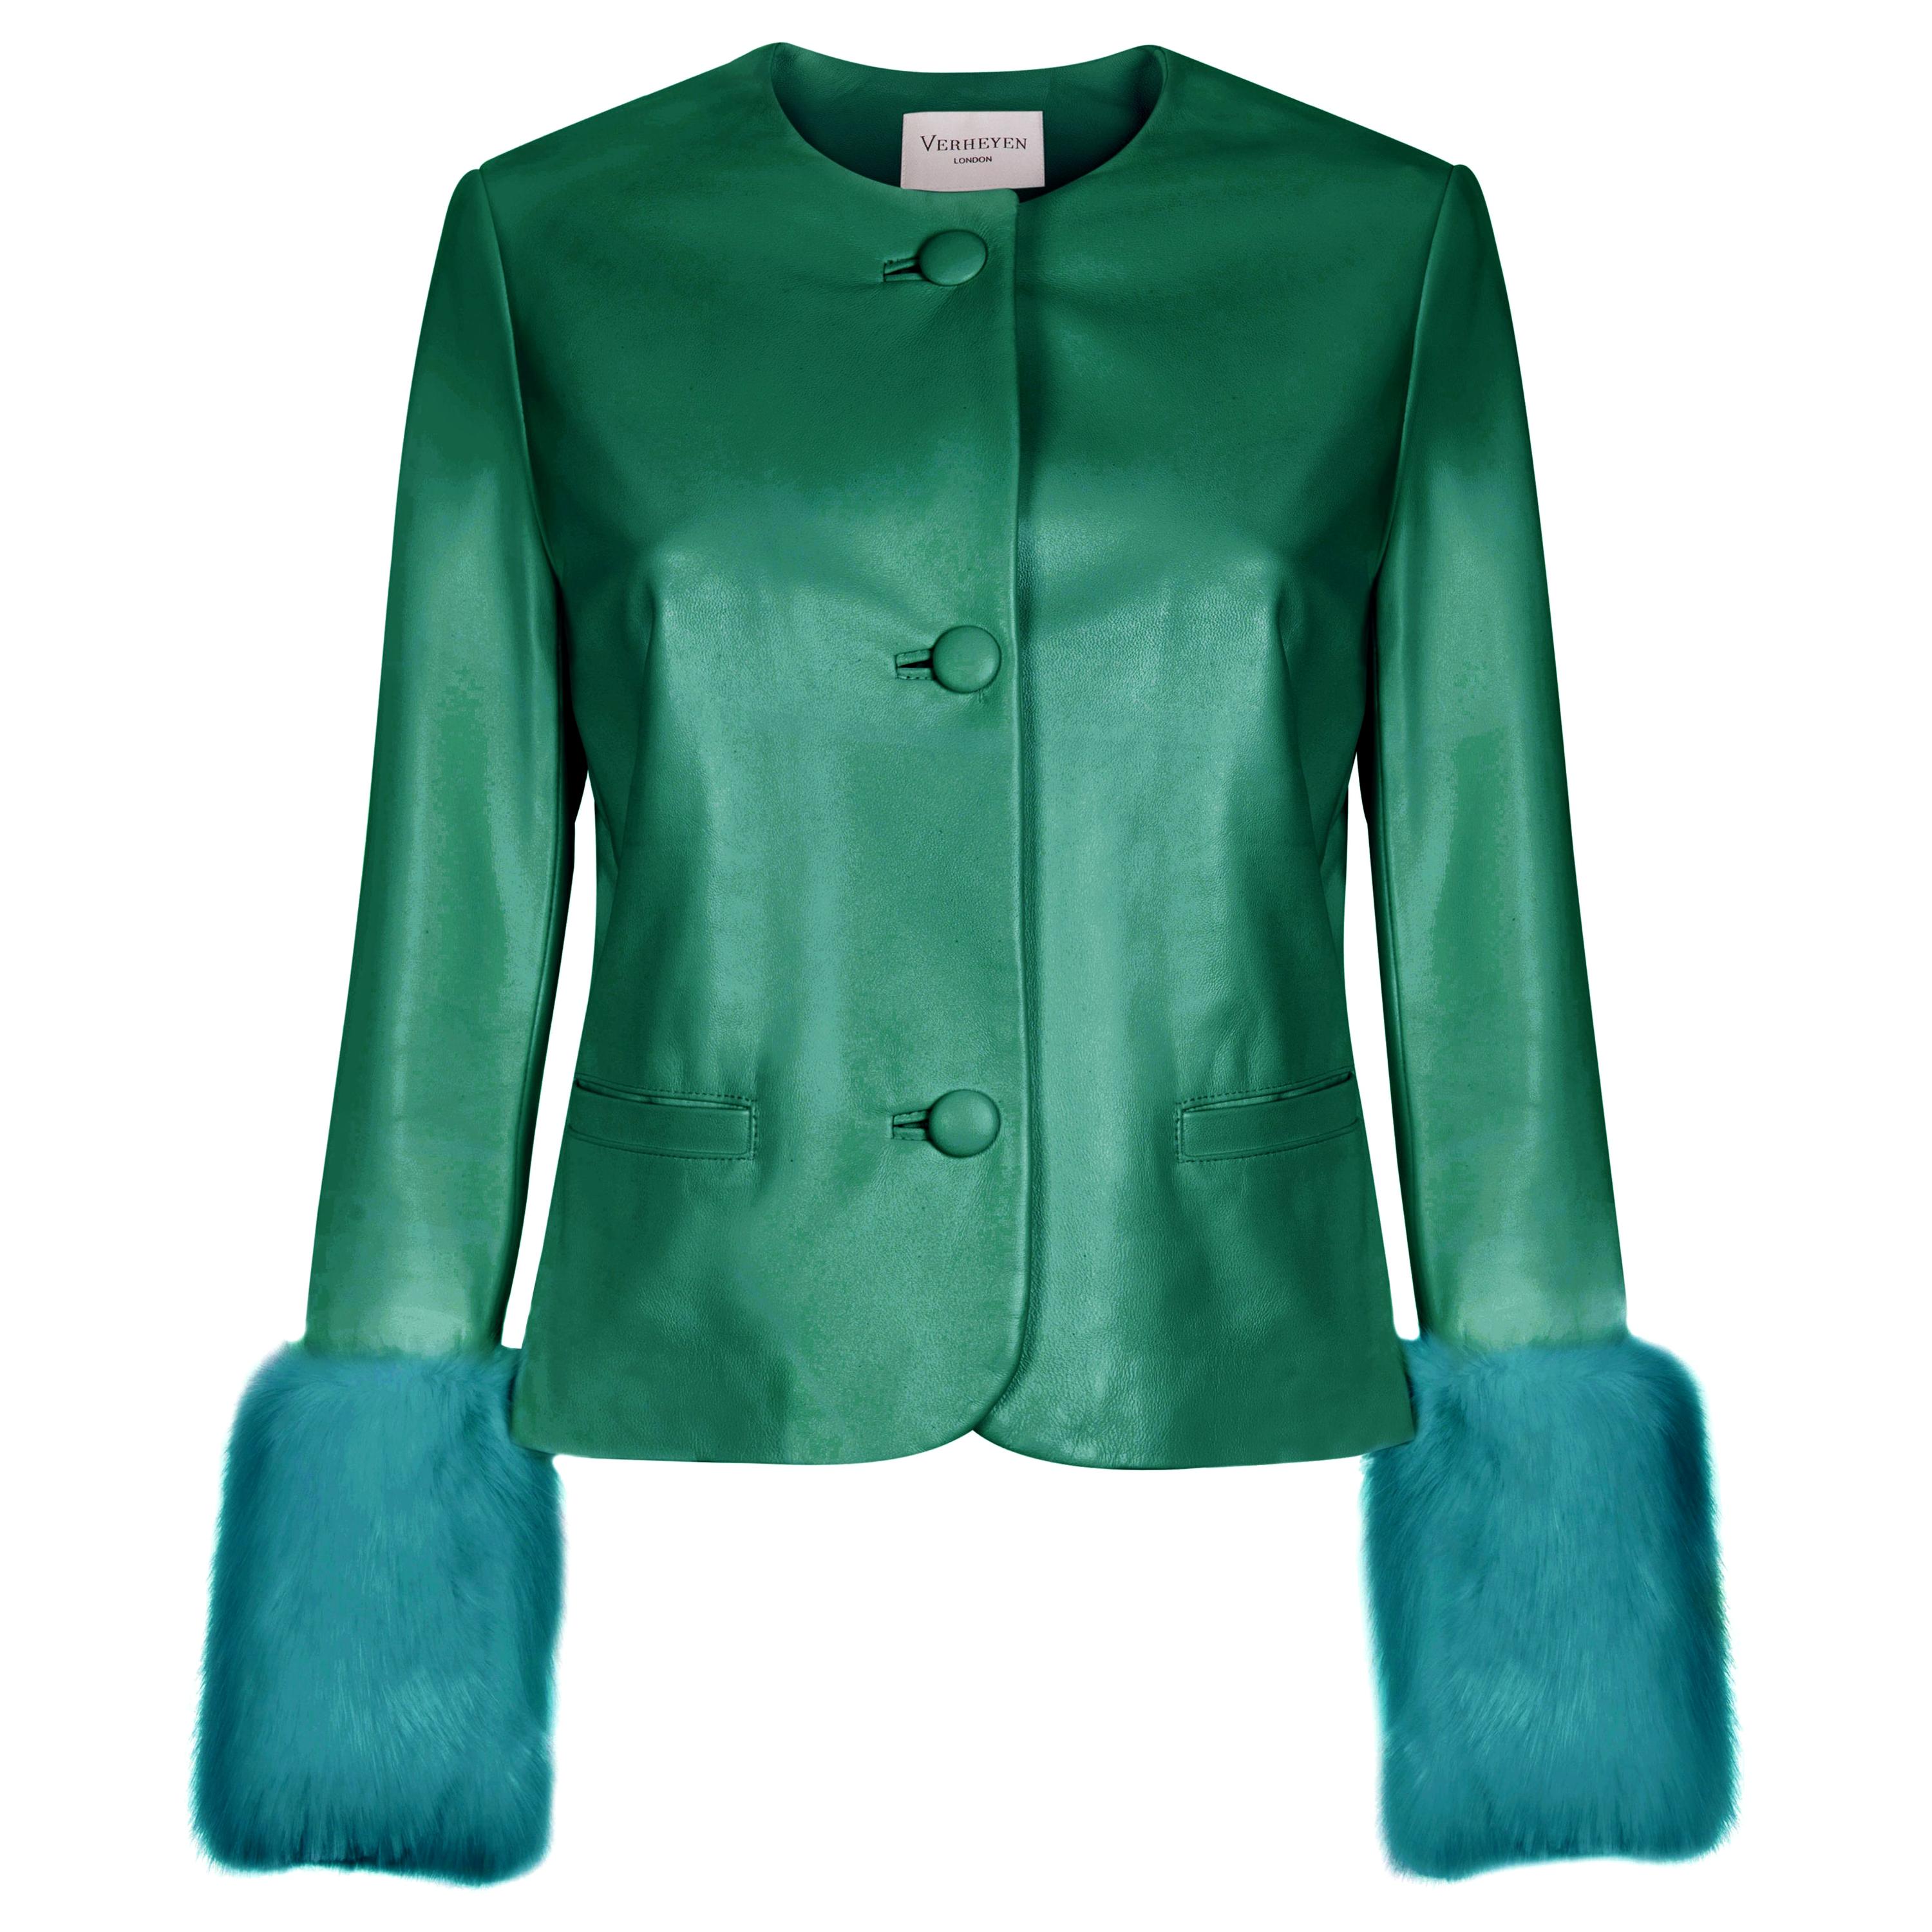 Verheyen Vita Cropped Jacket in Emerald Green leather & Faux Fur - Size uk 8 For Sale